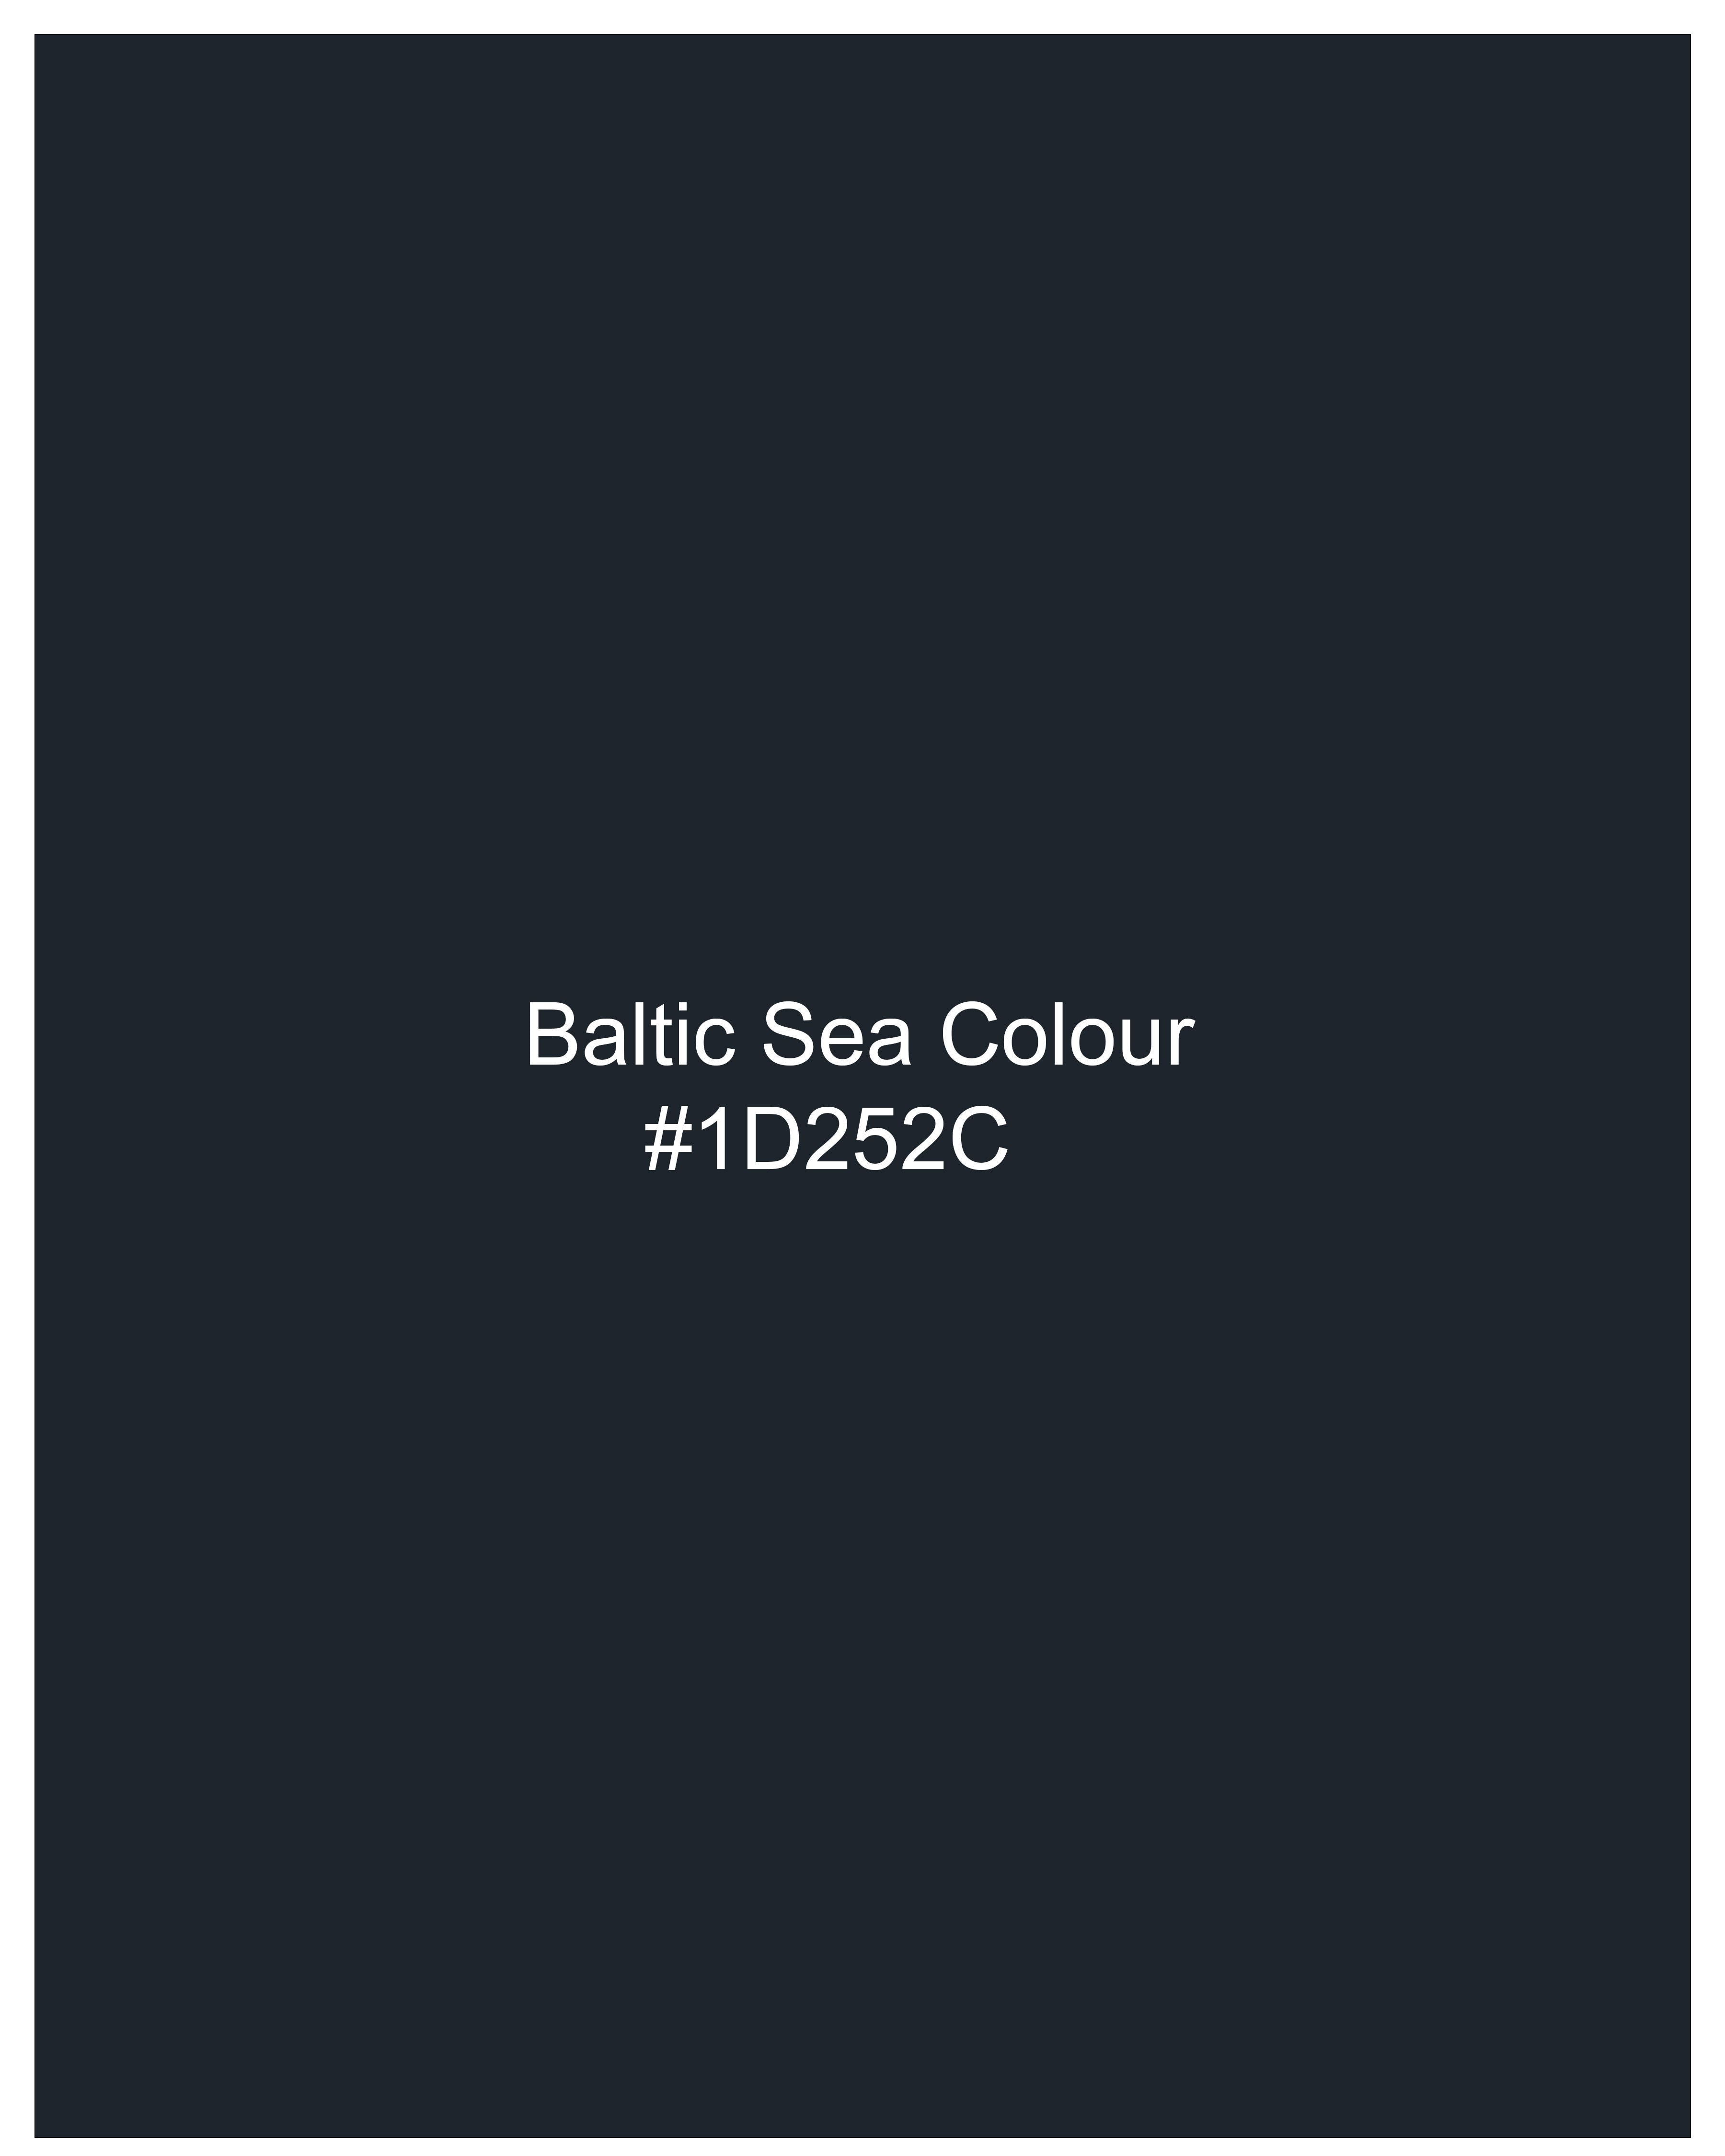 Baltic Sea Blue Premium Cotton Bandhgala Blazer BL2478-BG-36, BL2478-BG-38, BL2478-BG-40, BL2478-BG-42, BL2478-BG-44, BL2478-BG-46, BL2478-BG-48, BL2478-BG-50, BL2478-BG-52, BL2478-BG-54, BL2478-BG-56, BL2478-BG-58, BL2478-BG-60